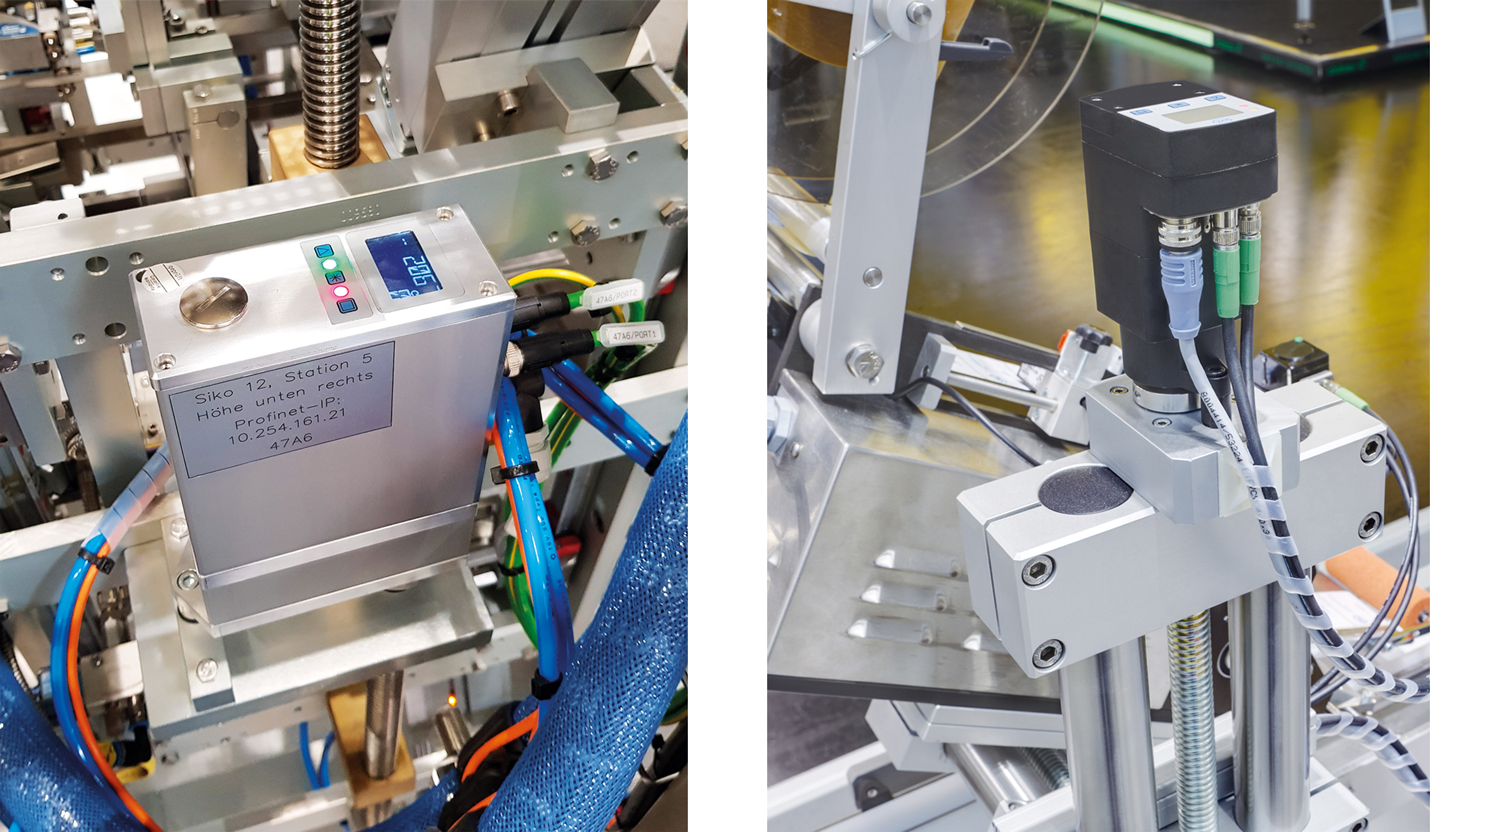 SIKO Positionierantriebe des Typ AG24 und AG05 an Verpackungs- und Etikettiermaschinen verbaut